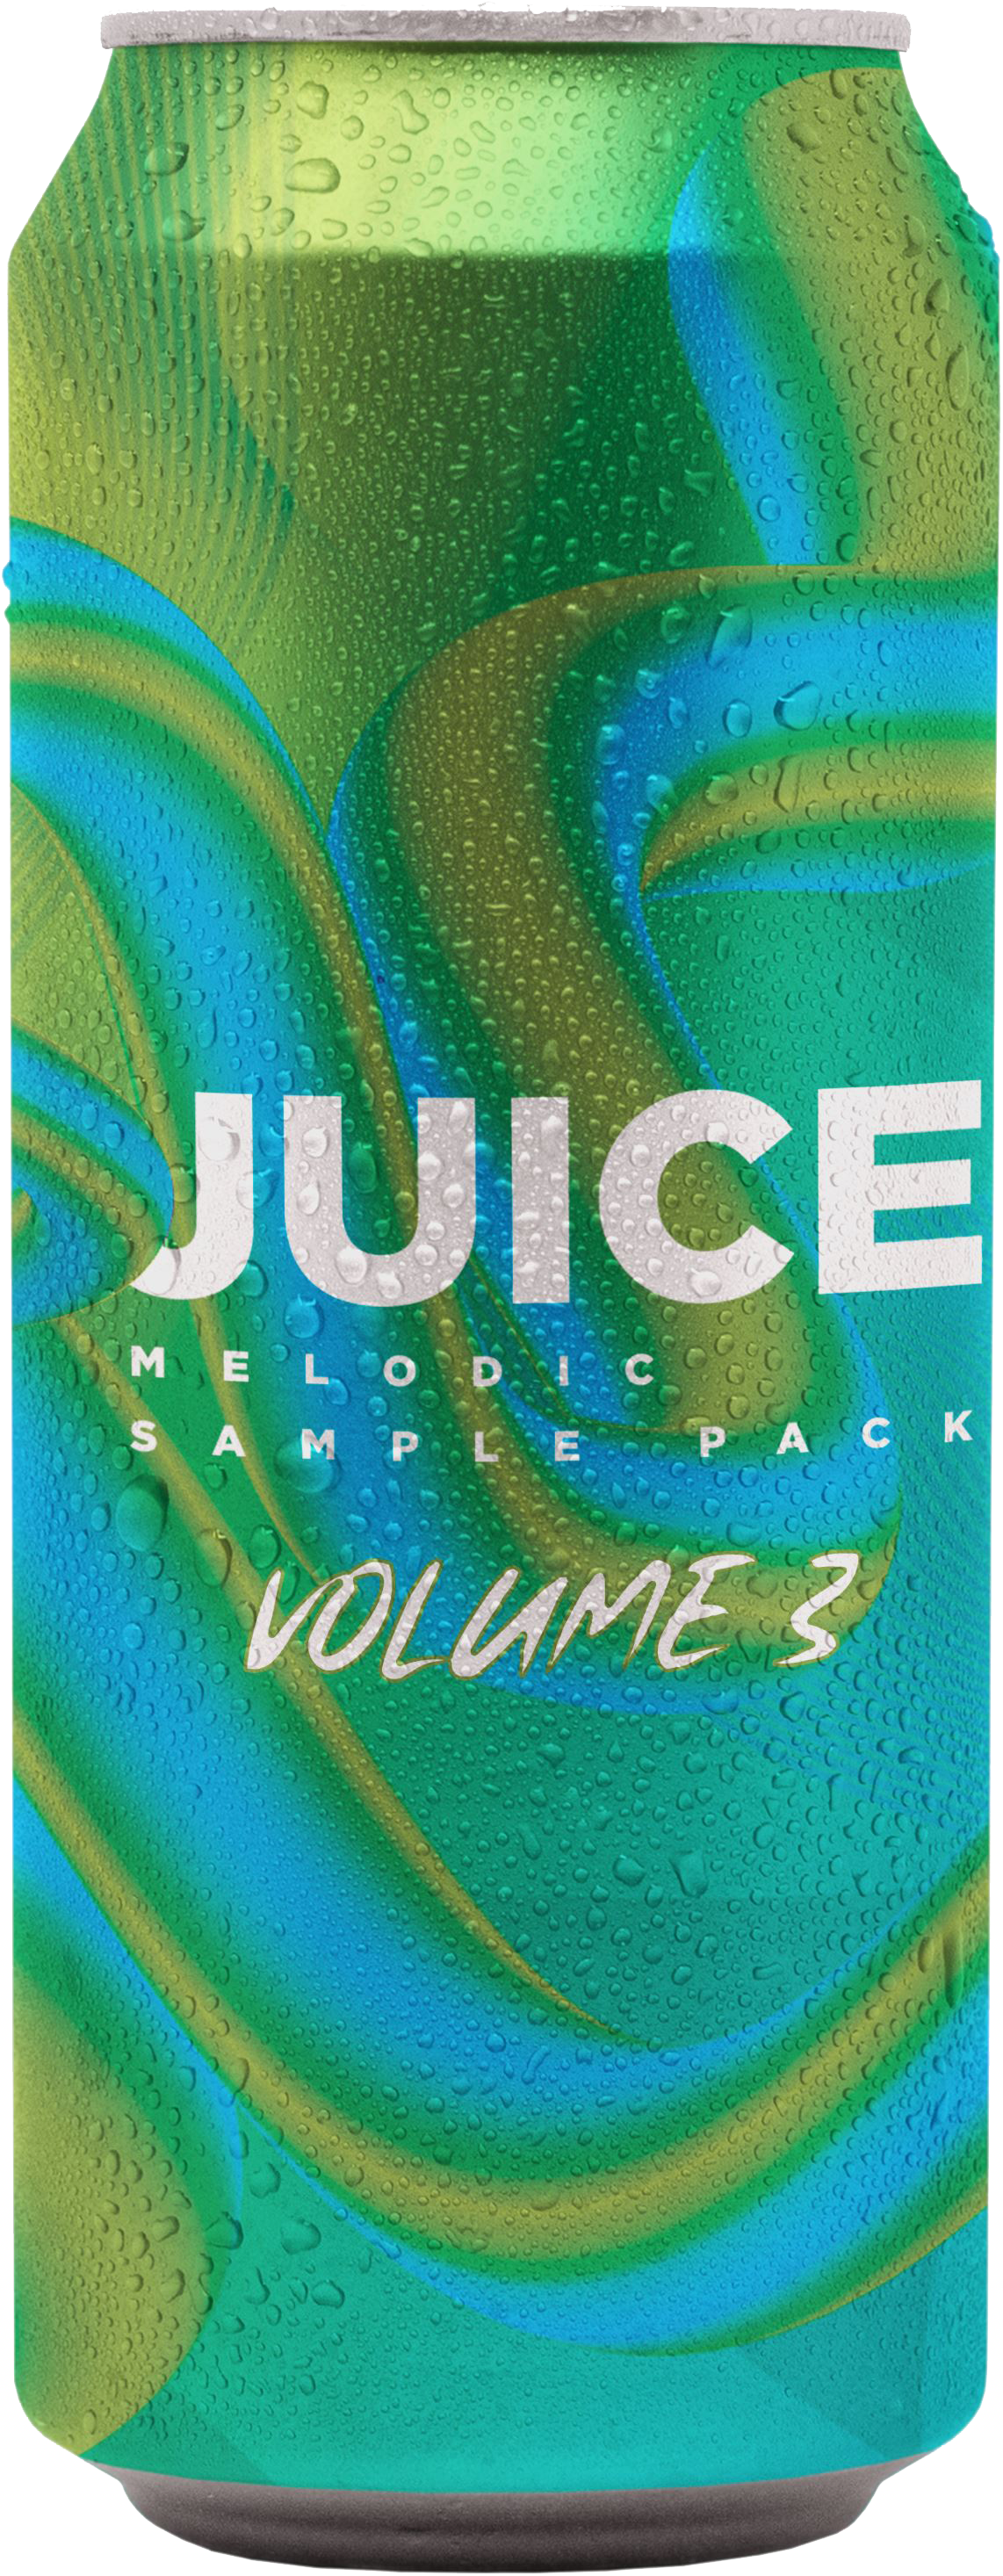 JUICE | Melody Sample Pack | Vol. 3 - Guitars